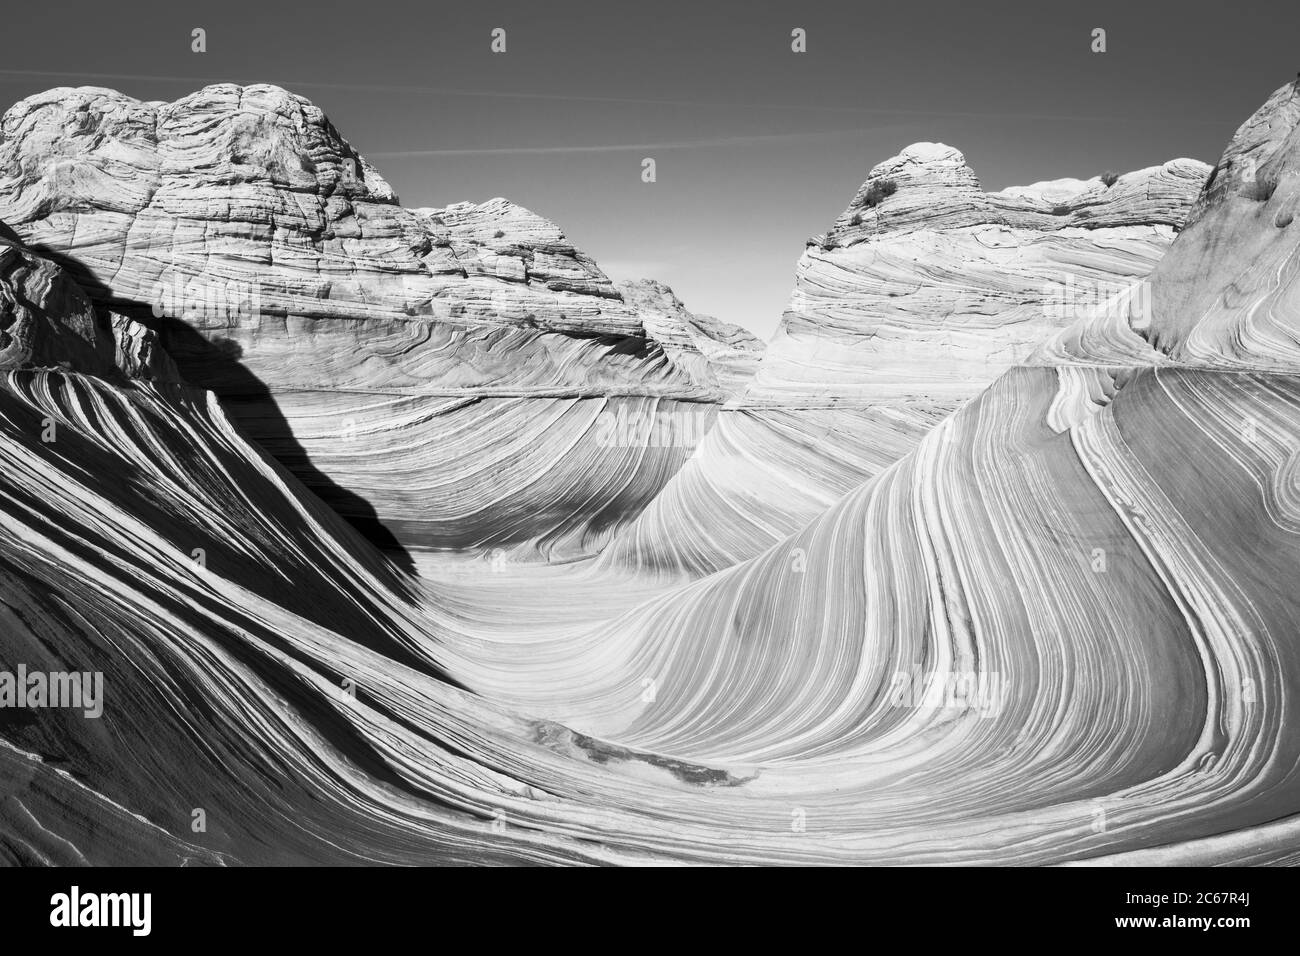 Paysage pittoresque avec formations rocheuses, Arizona, États-Unis Banque D'Images